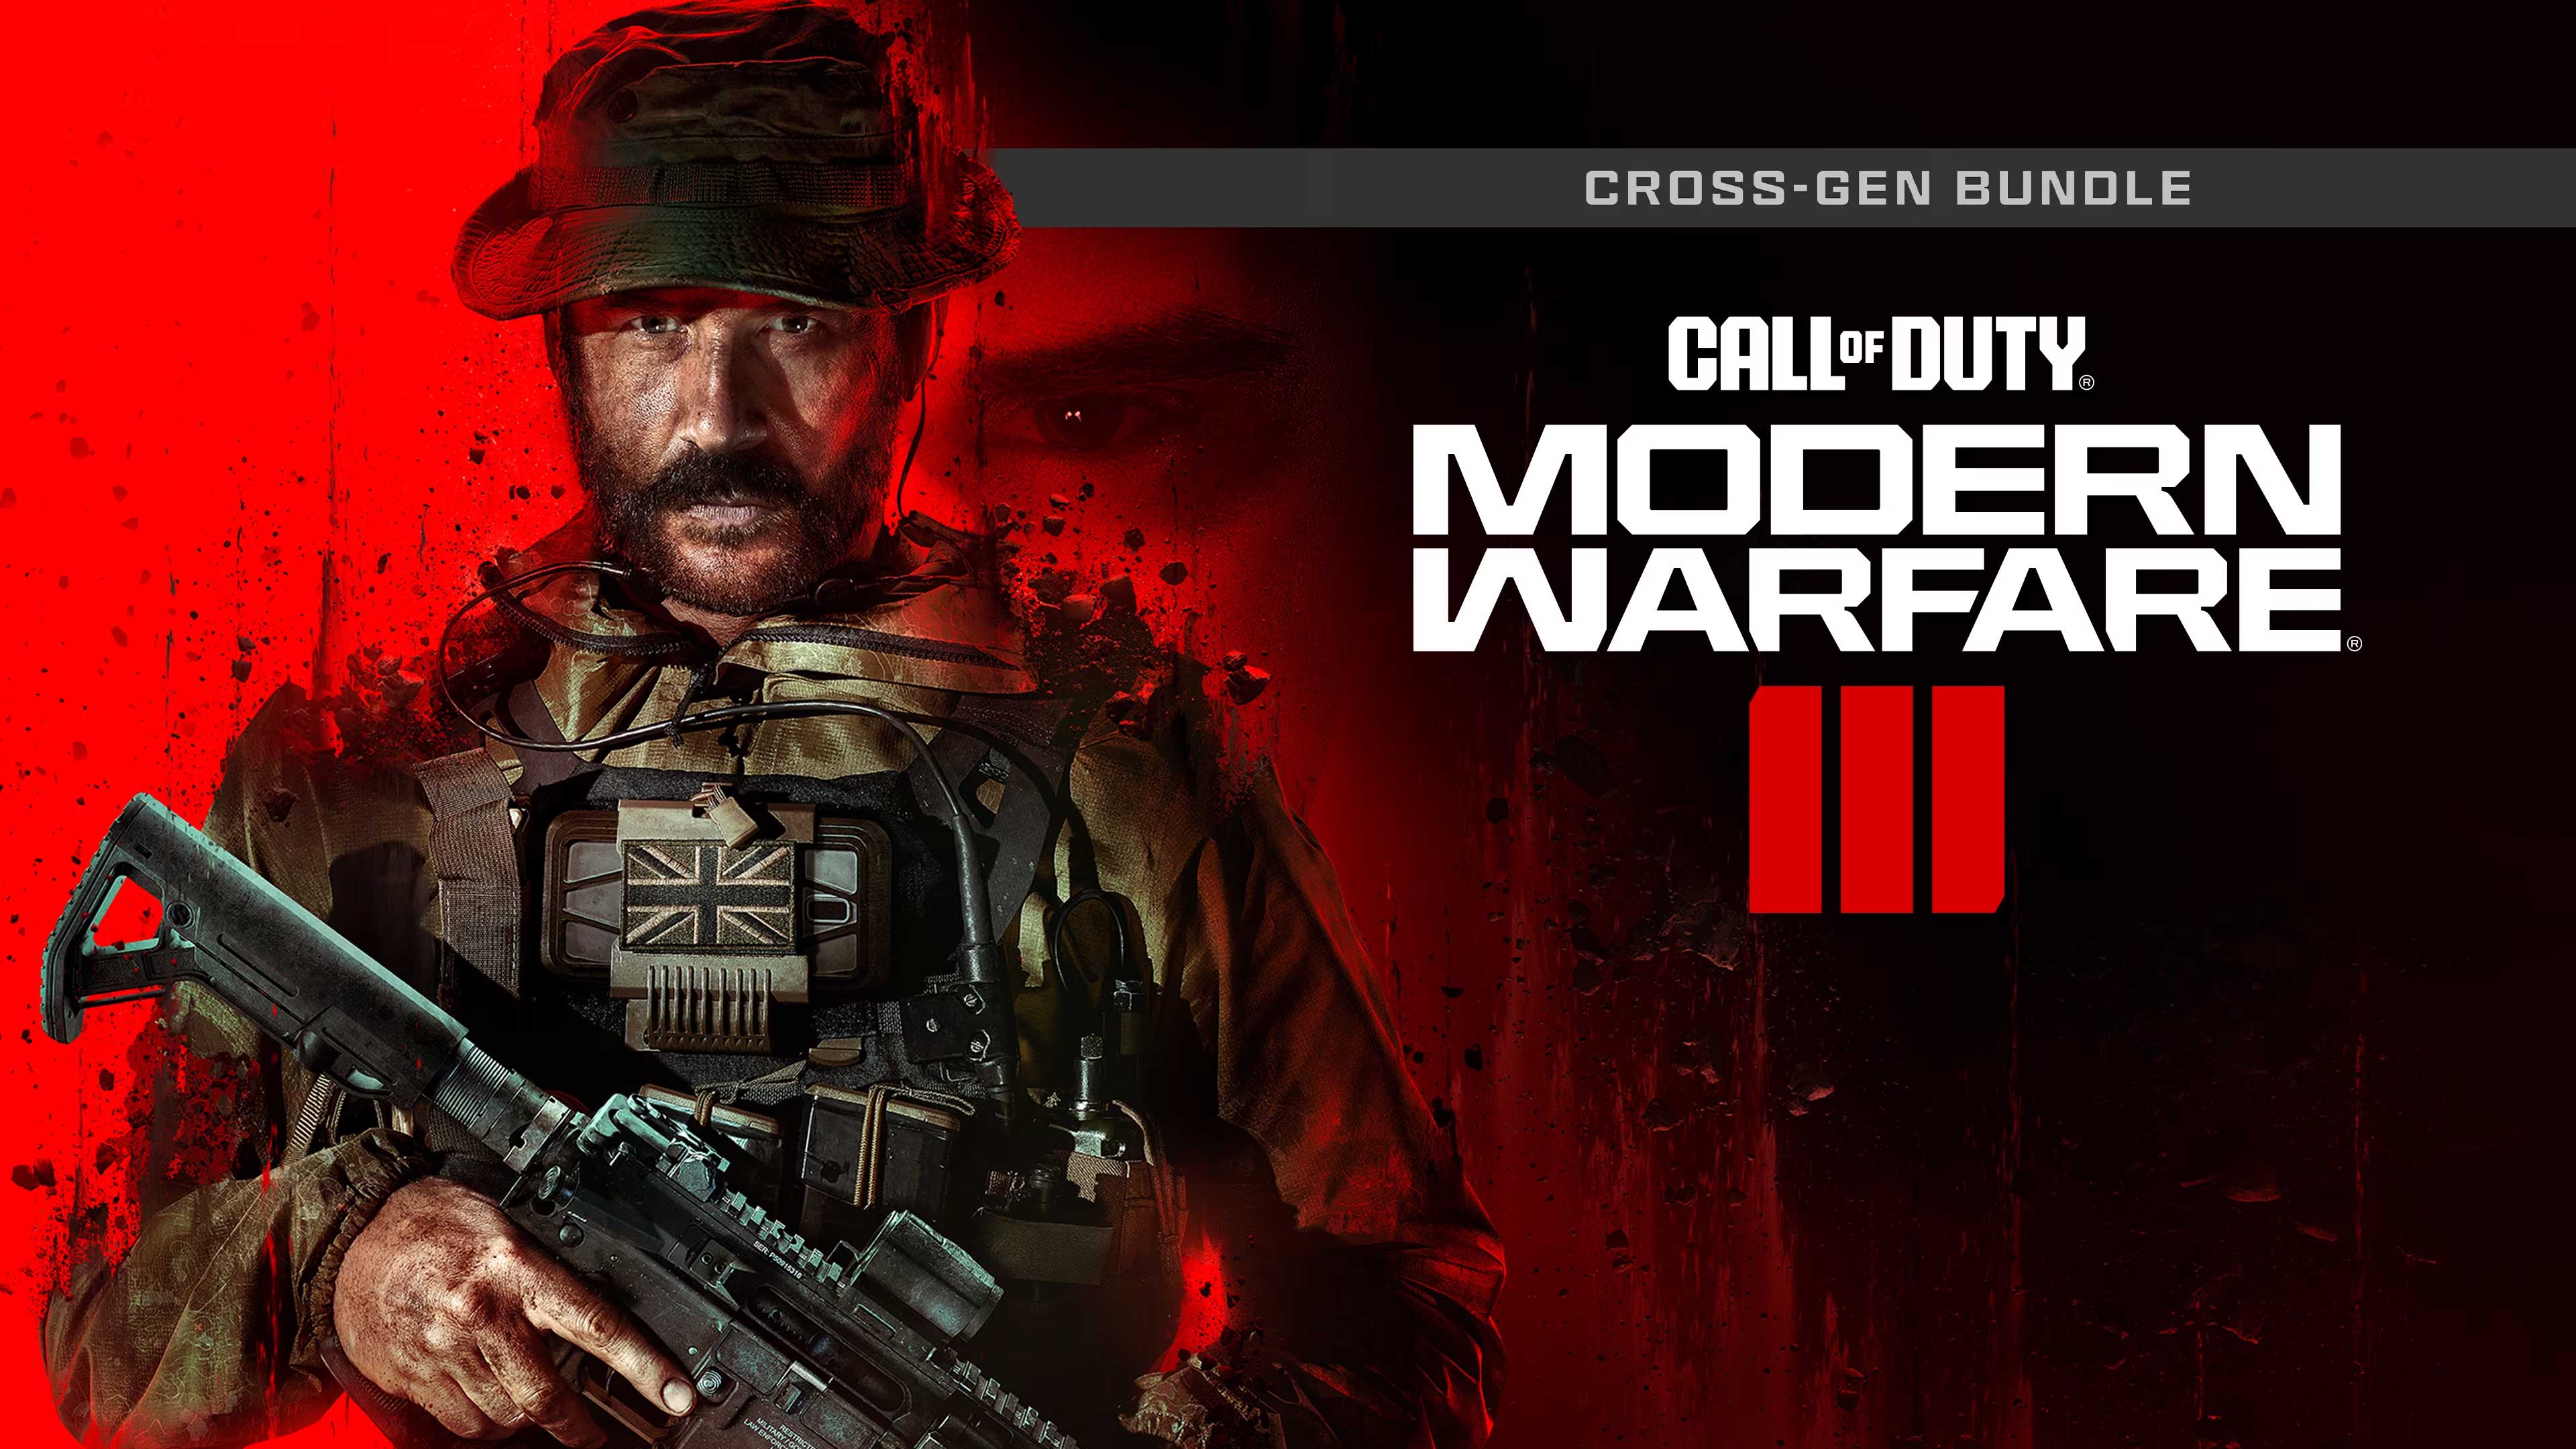 Call of Duty: Modern Warfare III - Cross-Gen Bundle, The Critical Player, thecriticalplayer.com